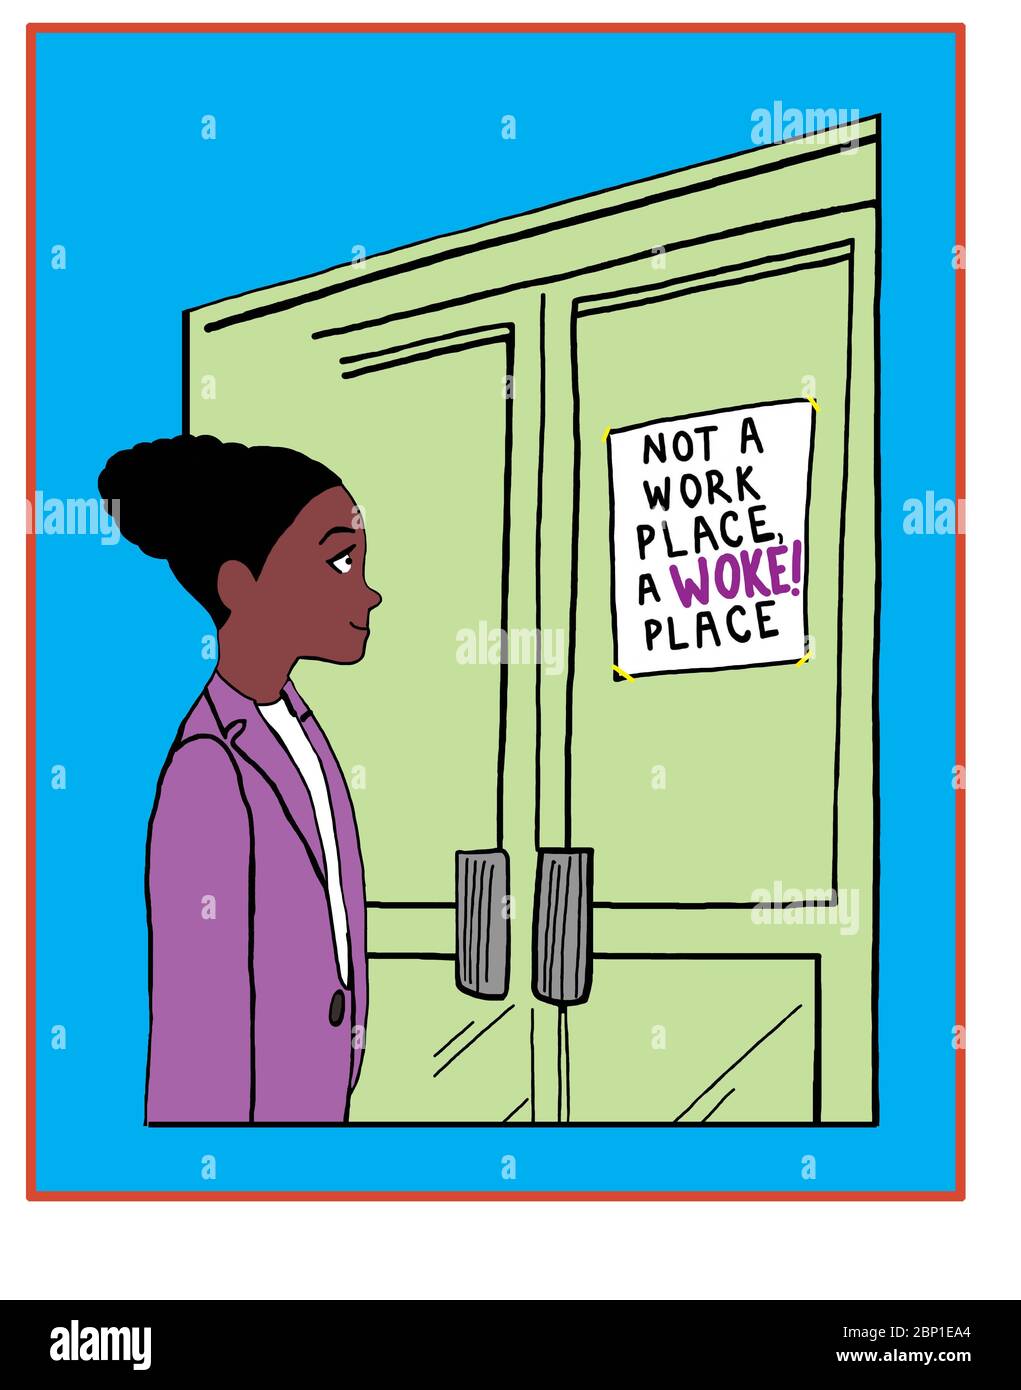 Farbzeichentrick zeigt eine schöne afroamerikanische Frau lächelnd, wie sie ein Schild liest, dass es nicht ein Arbeitsplatz, sondern ein erwachten Ort ist. Stockfoto